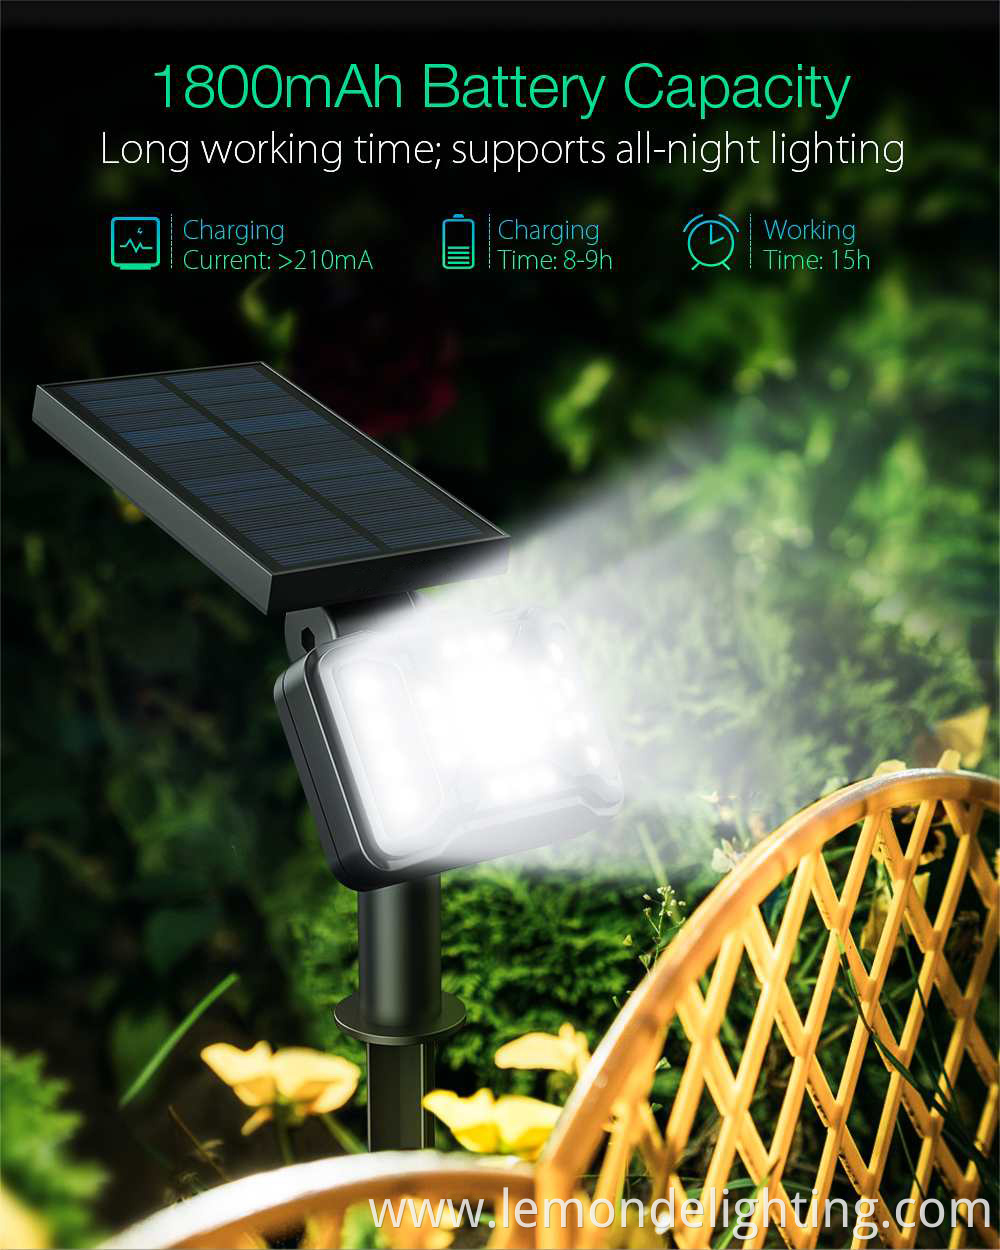 Solar-powered outdoor lighting fixtures